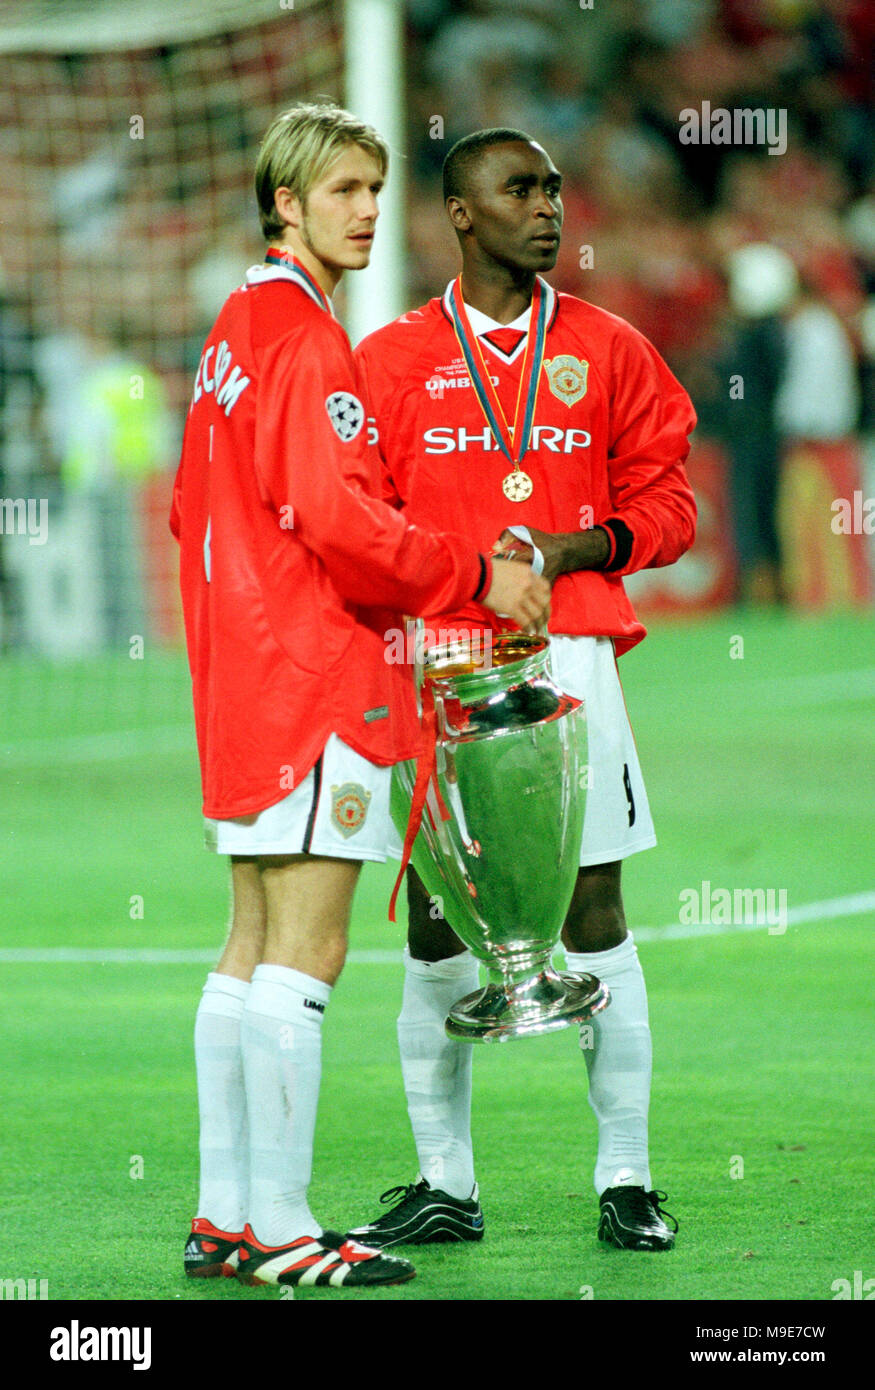 Tượng Beckham 7 Manchester United Treble 1999 Champion League Final